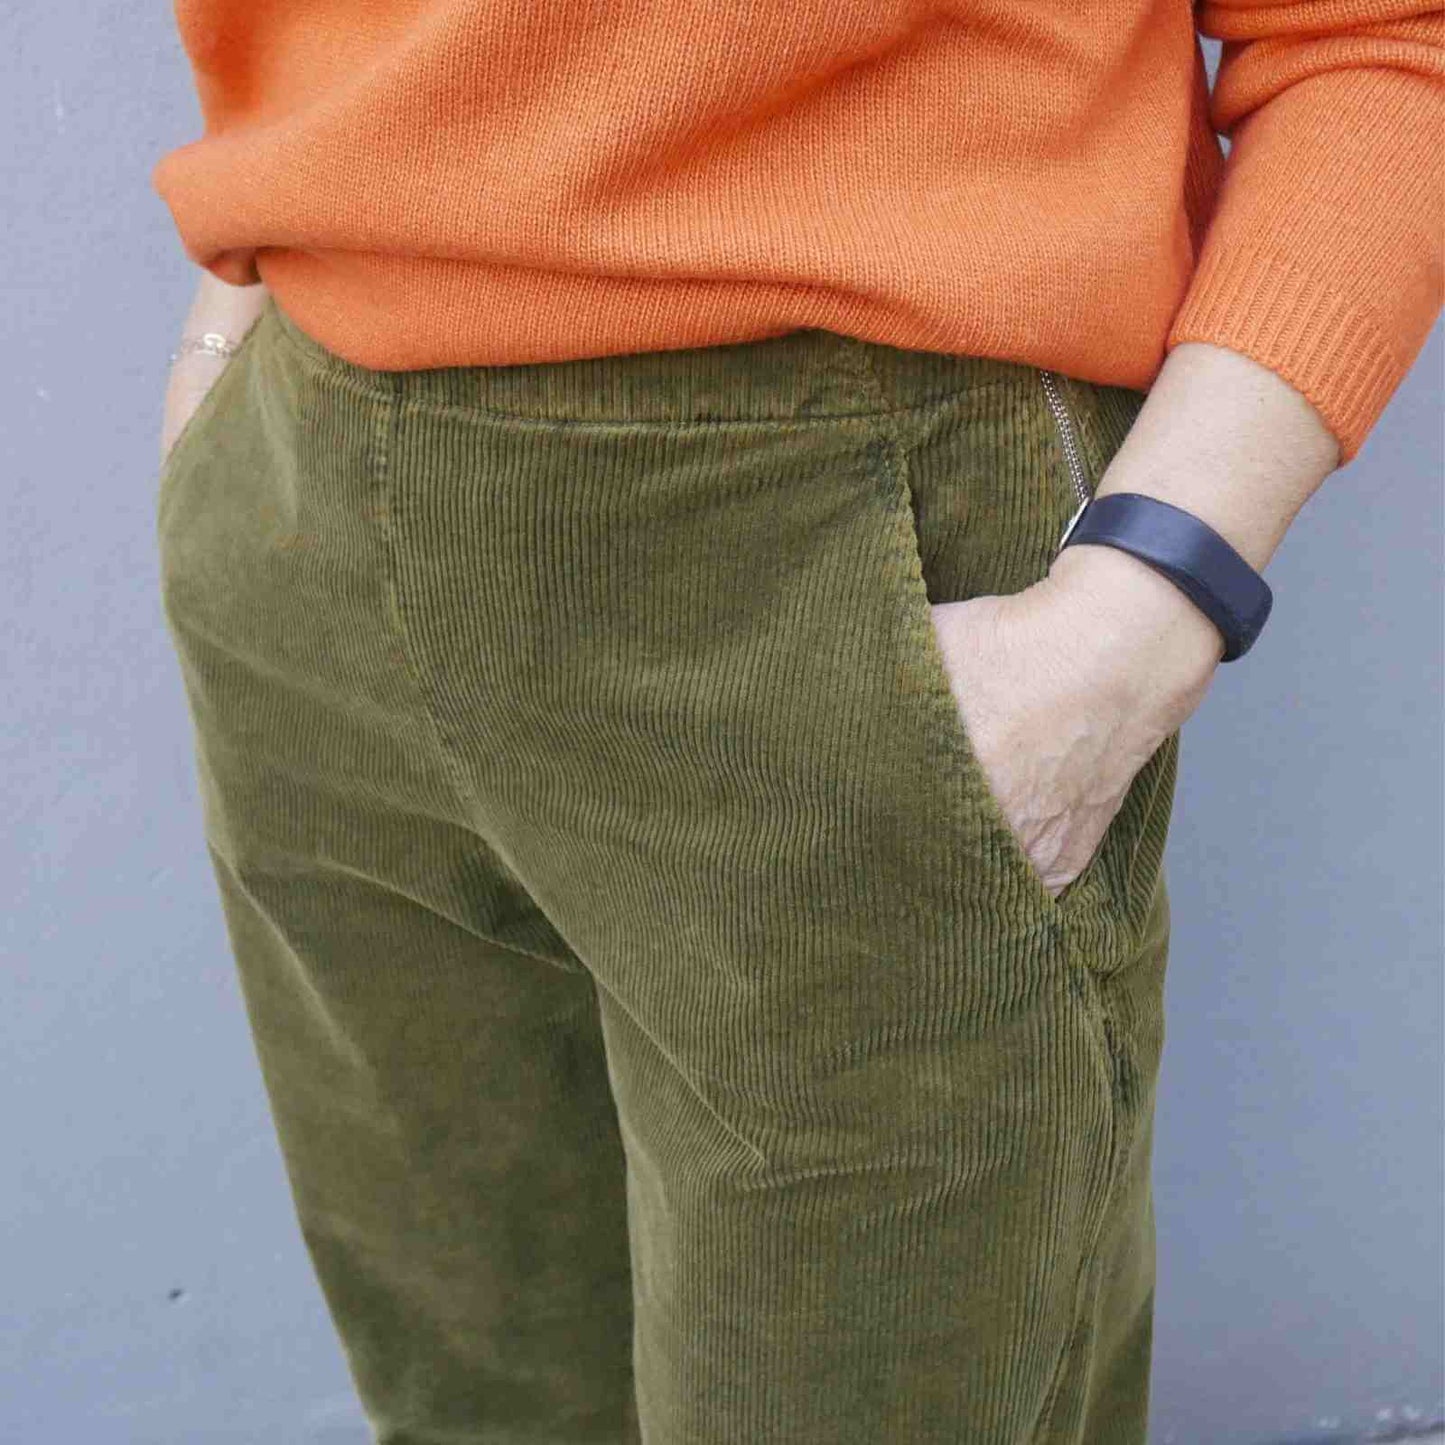 Orange Gorridsen trøje og grønne Oska bukser Anbi